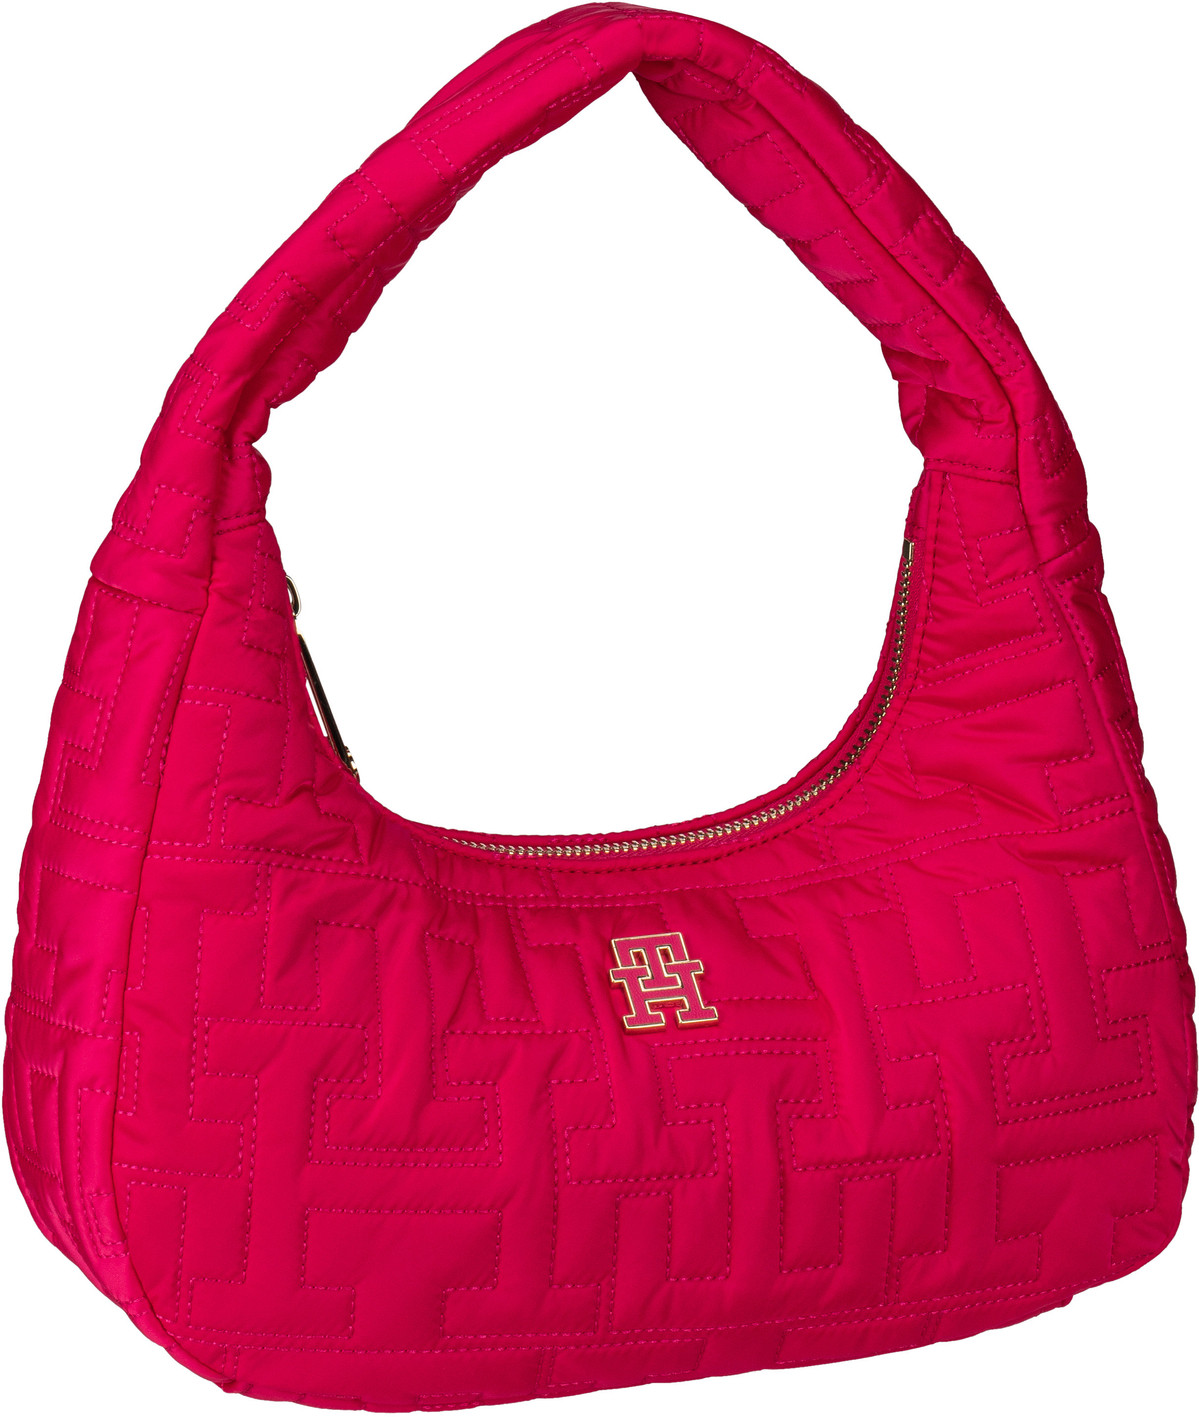 Tommy Hilfiger Schultertasche TH Chic Nylon Shoulder Bag PF23 Pink (5.3 Liter)  - Onlineshop Taschenkaufhaus